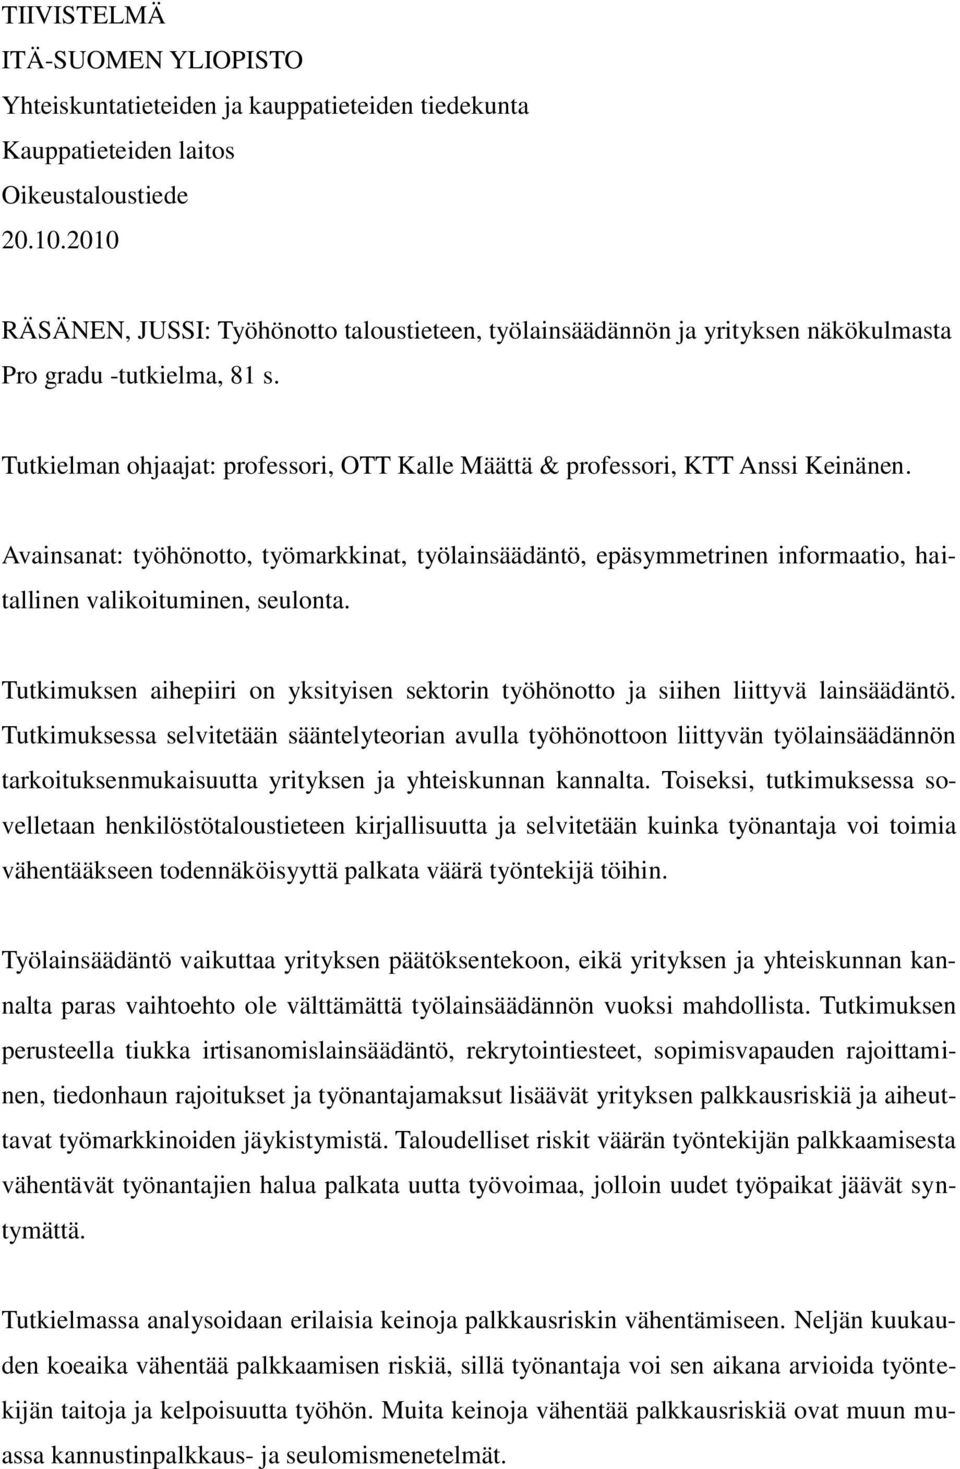 Tutkielman ohjaajat: professori, OTT Kalle Määttä & professori, KTT Anssi Keinänen.